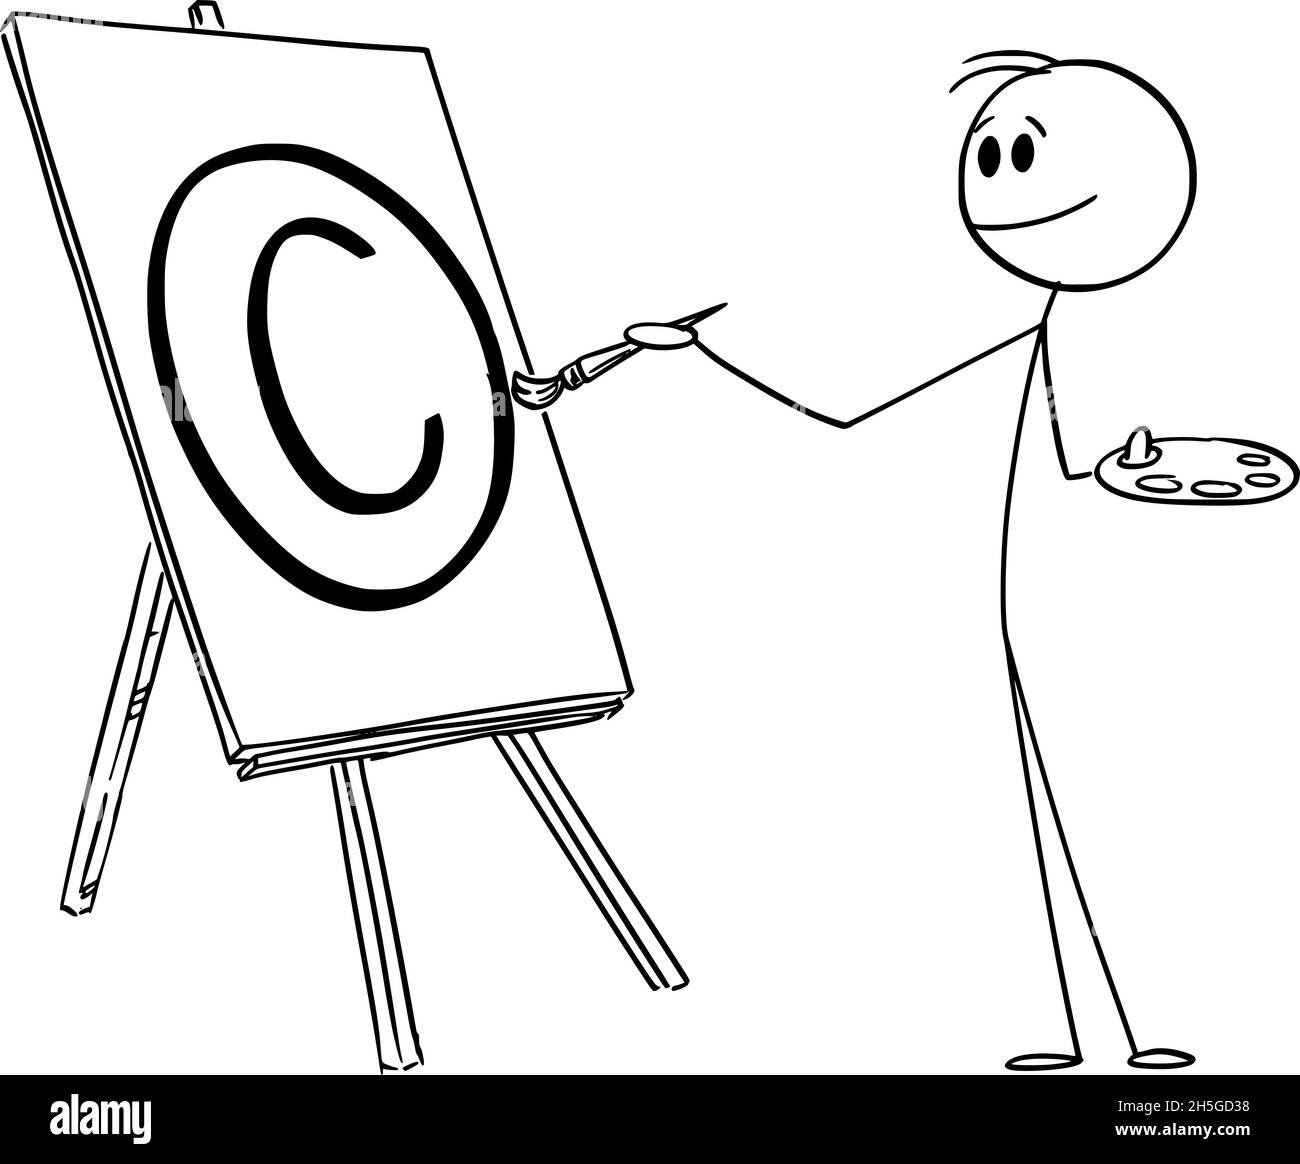 Pittore con pennello creazione simbolo di protezione del copyright, Vector Cartoon Stick Figura Illustrazione Illustrazione Vettoriale